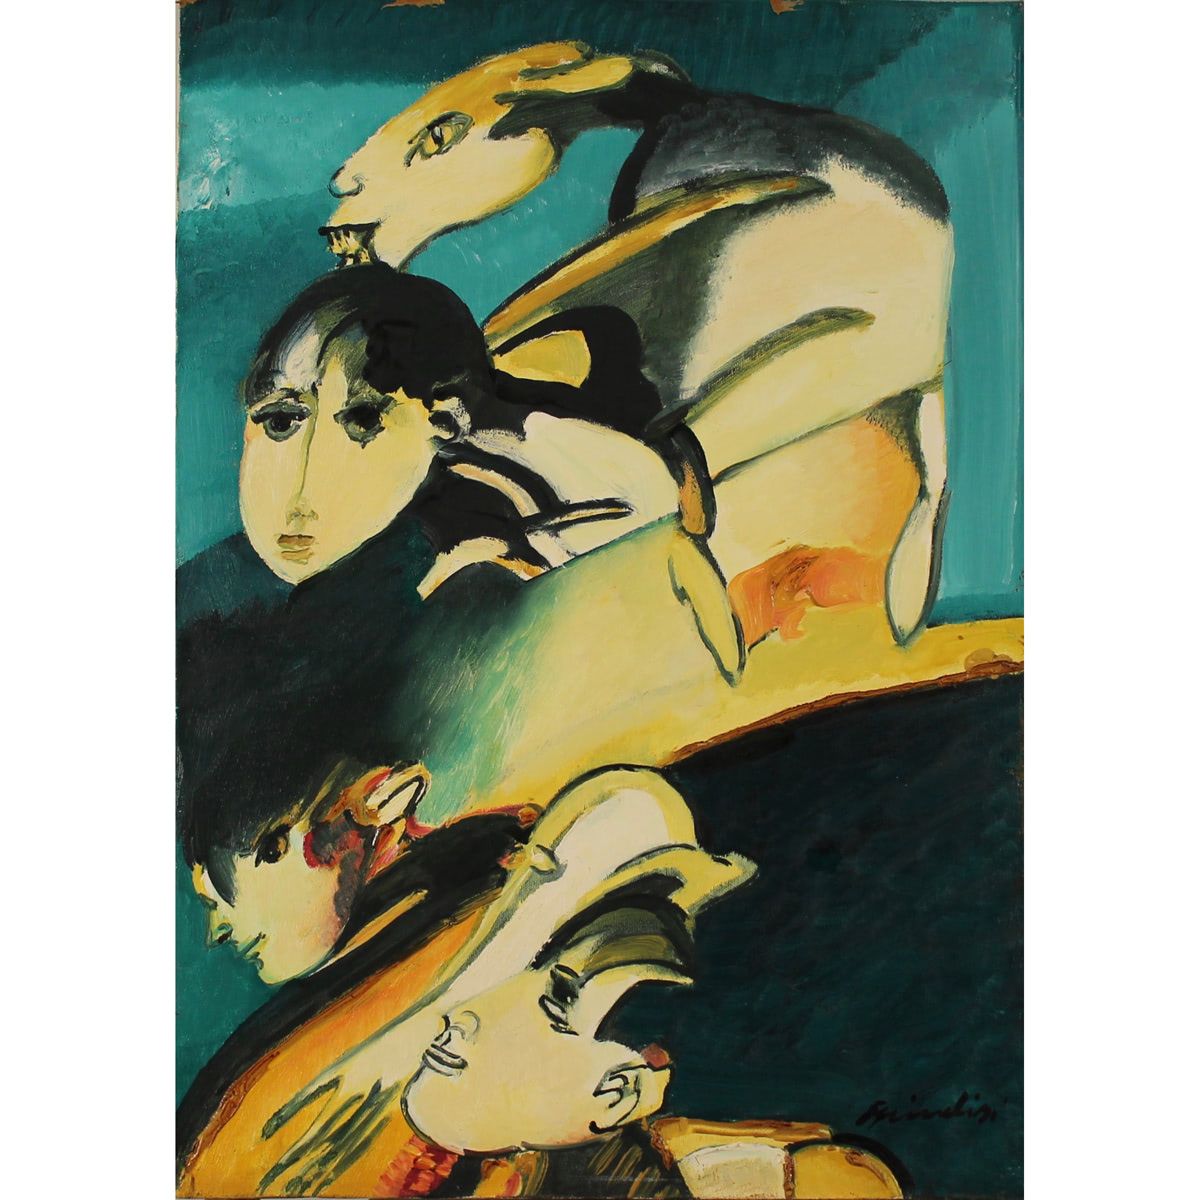 REMO BRINDISI (1918/1996) "Volti"-"Faces" Ölgemälde auf Leinwand in vergoldetem &hellip;